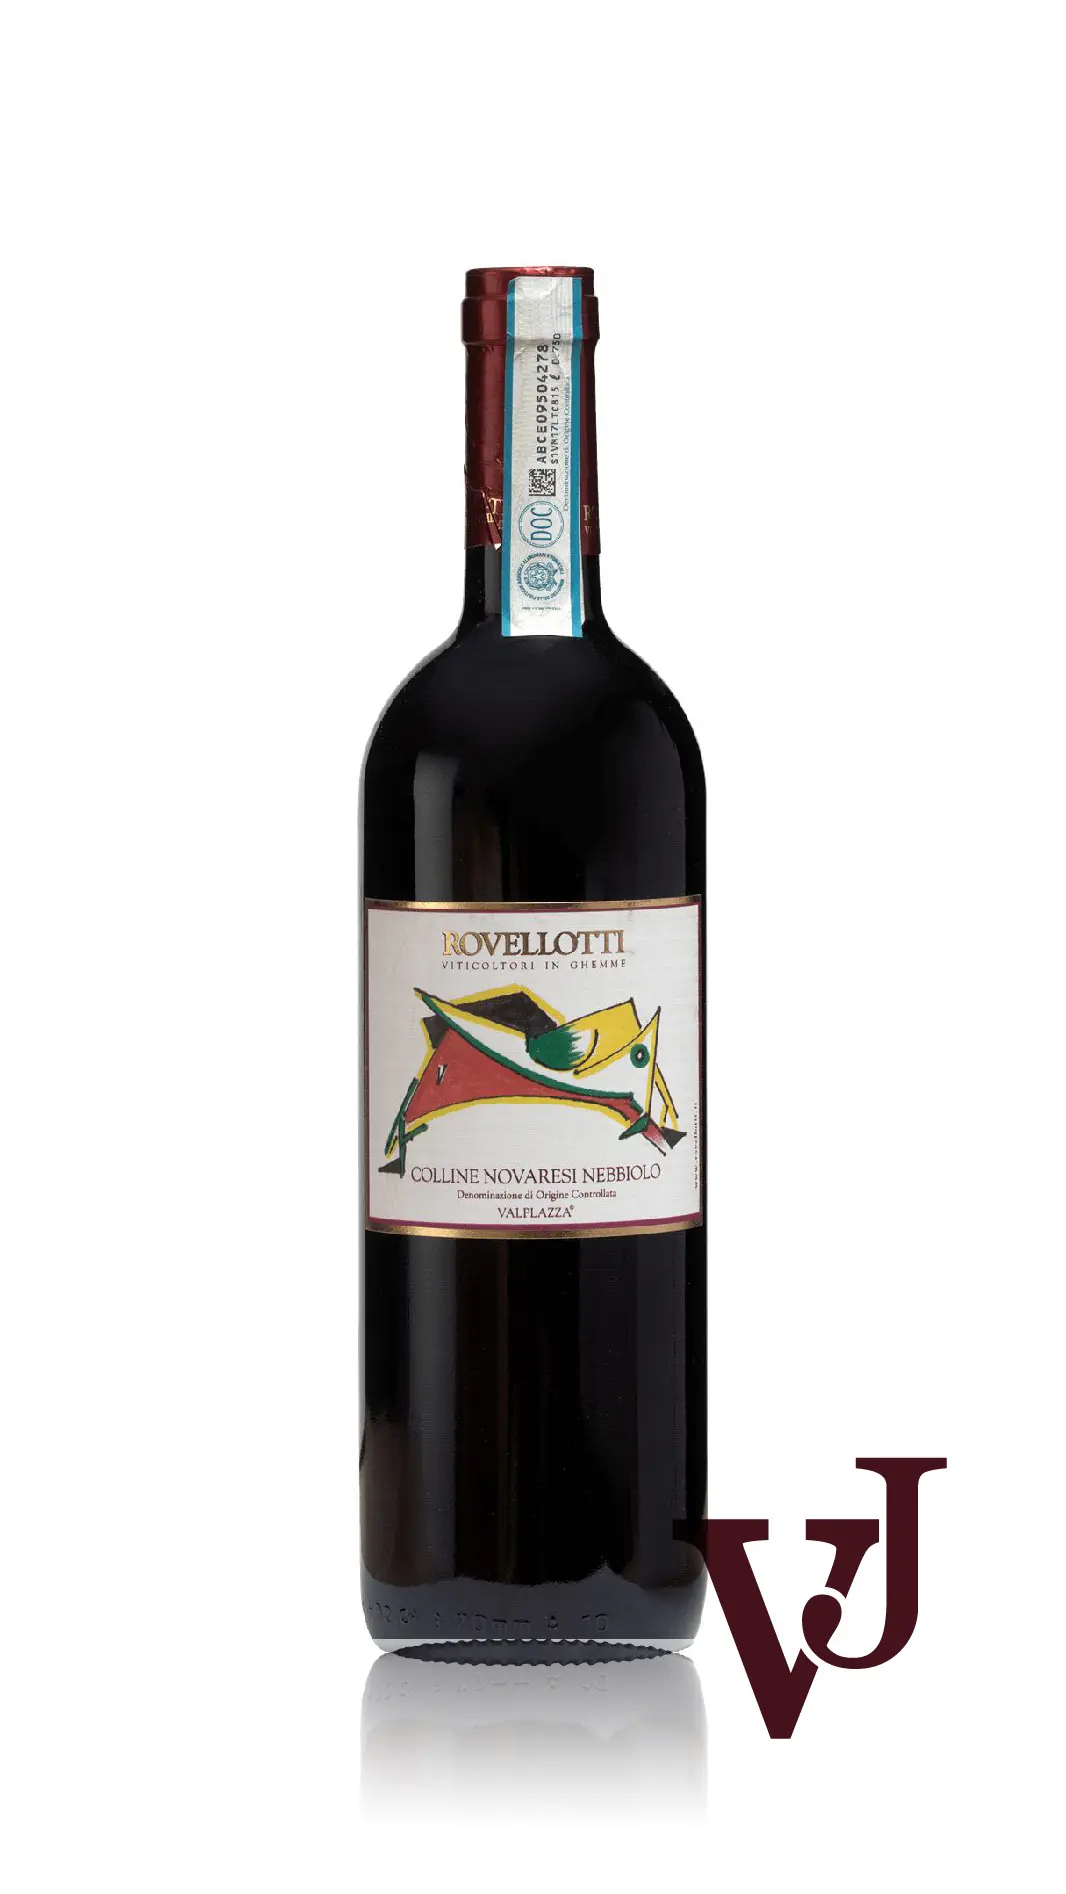 Rött Vin - Valplazza Rovellotti Nebbiolo artikel nummer 7900401 från producenten Rovellotti från området Italien - Vinjournalen.se